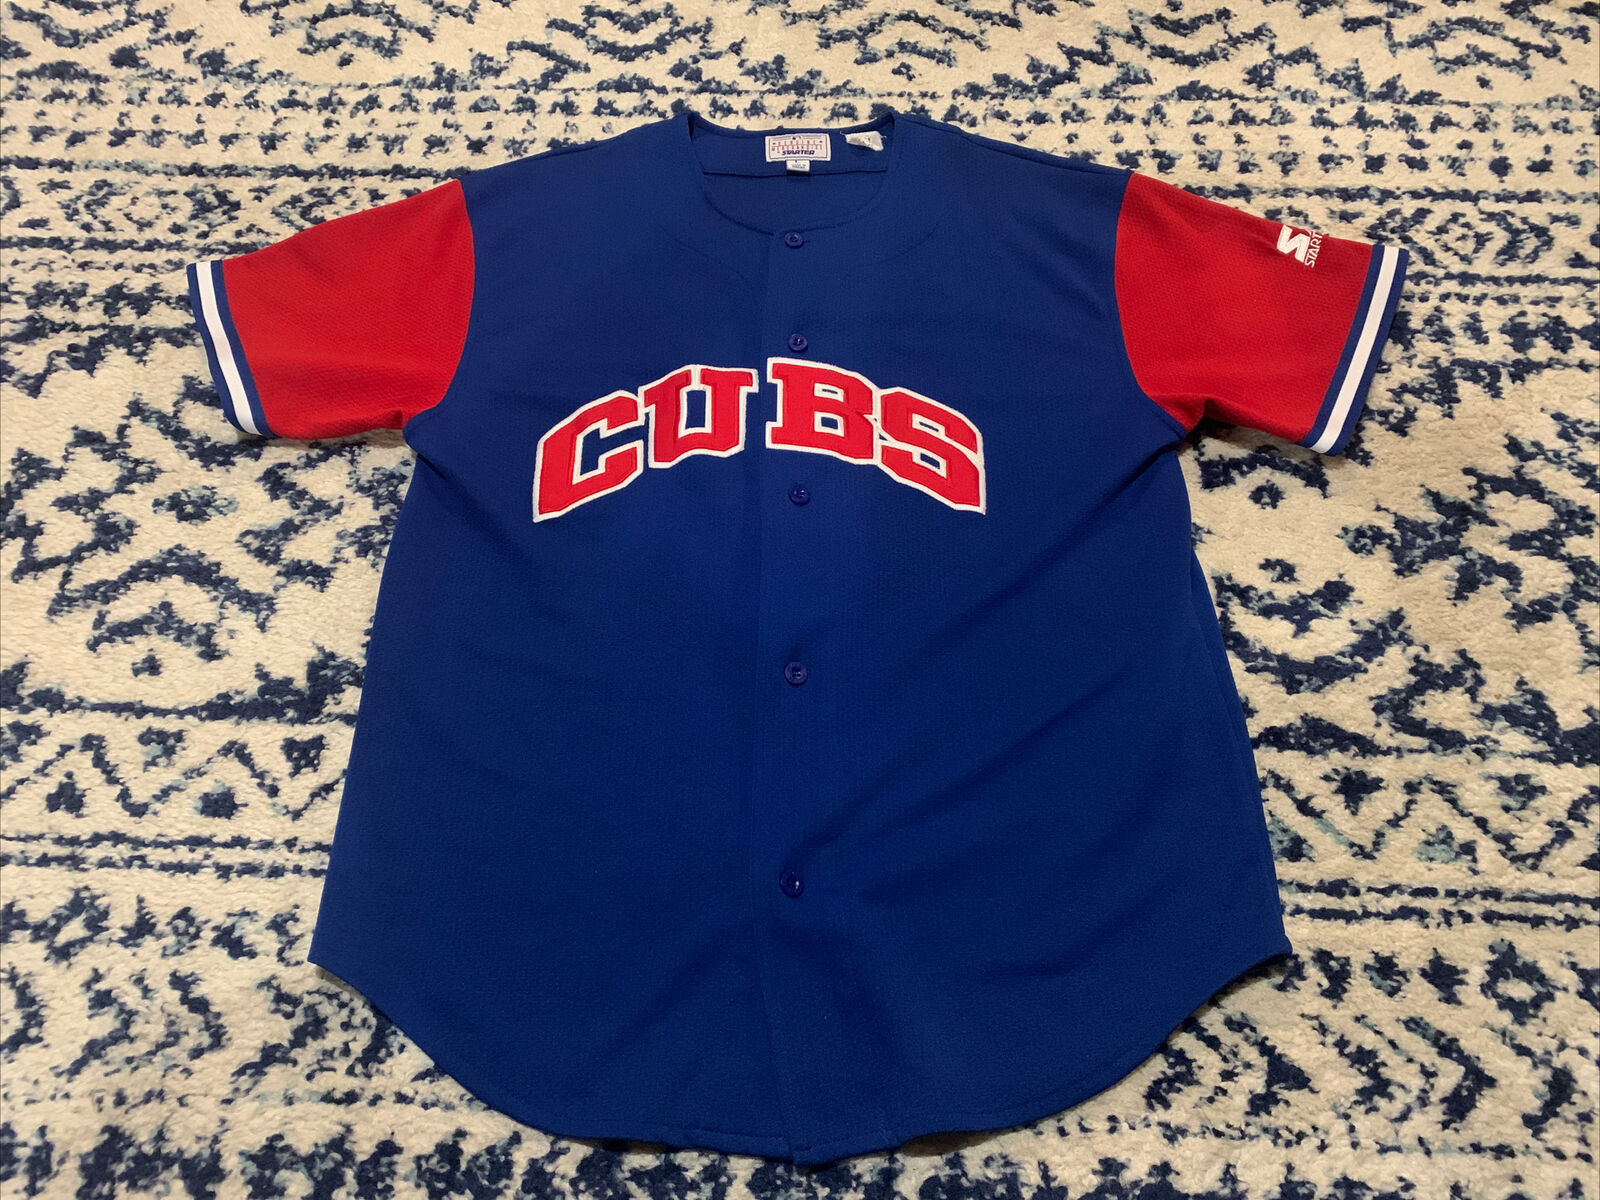 vintage chicago cubs jerseys